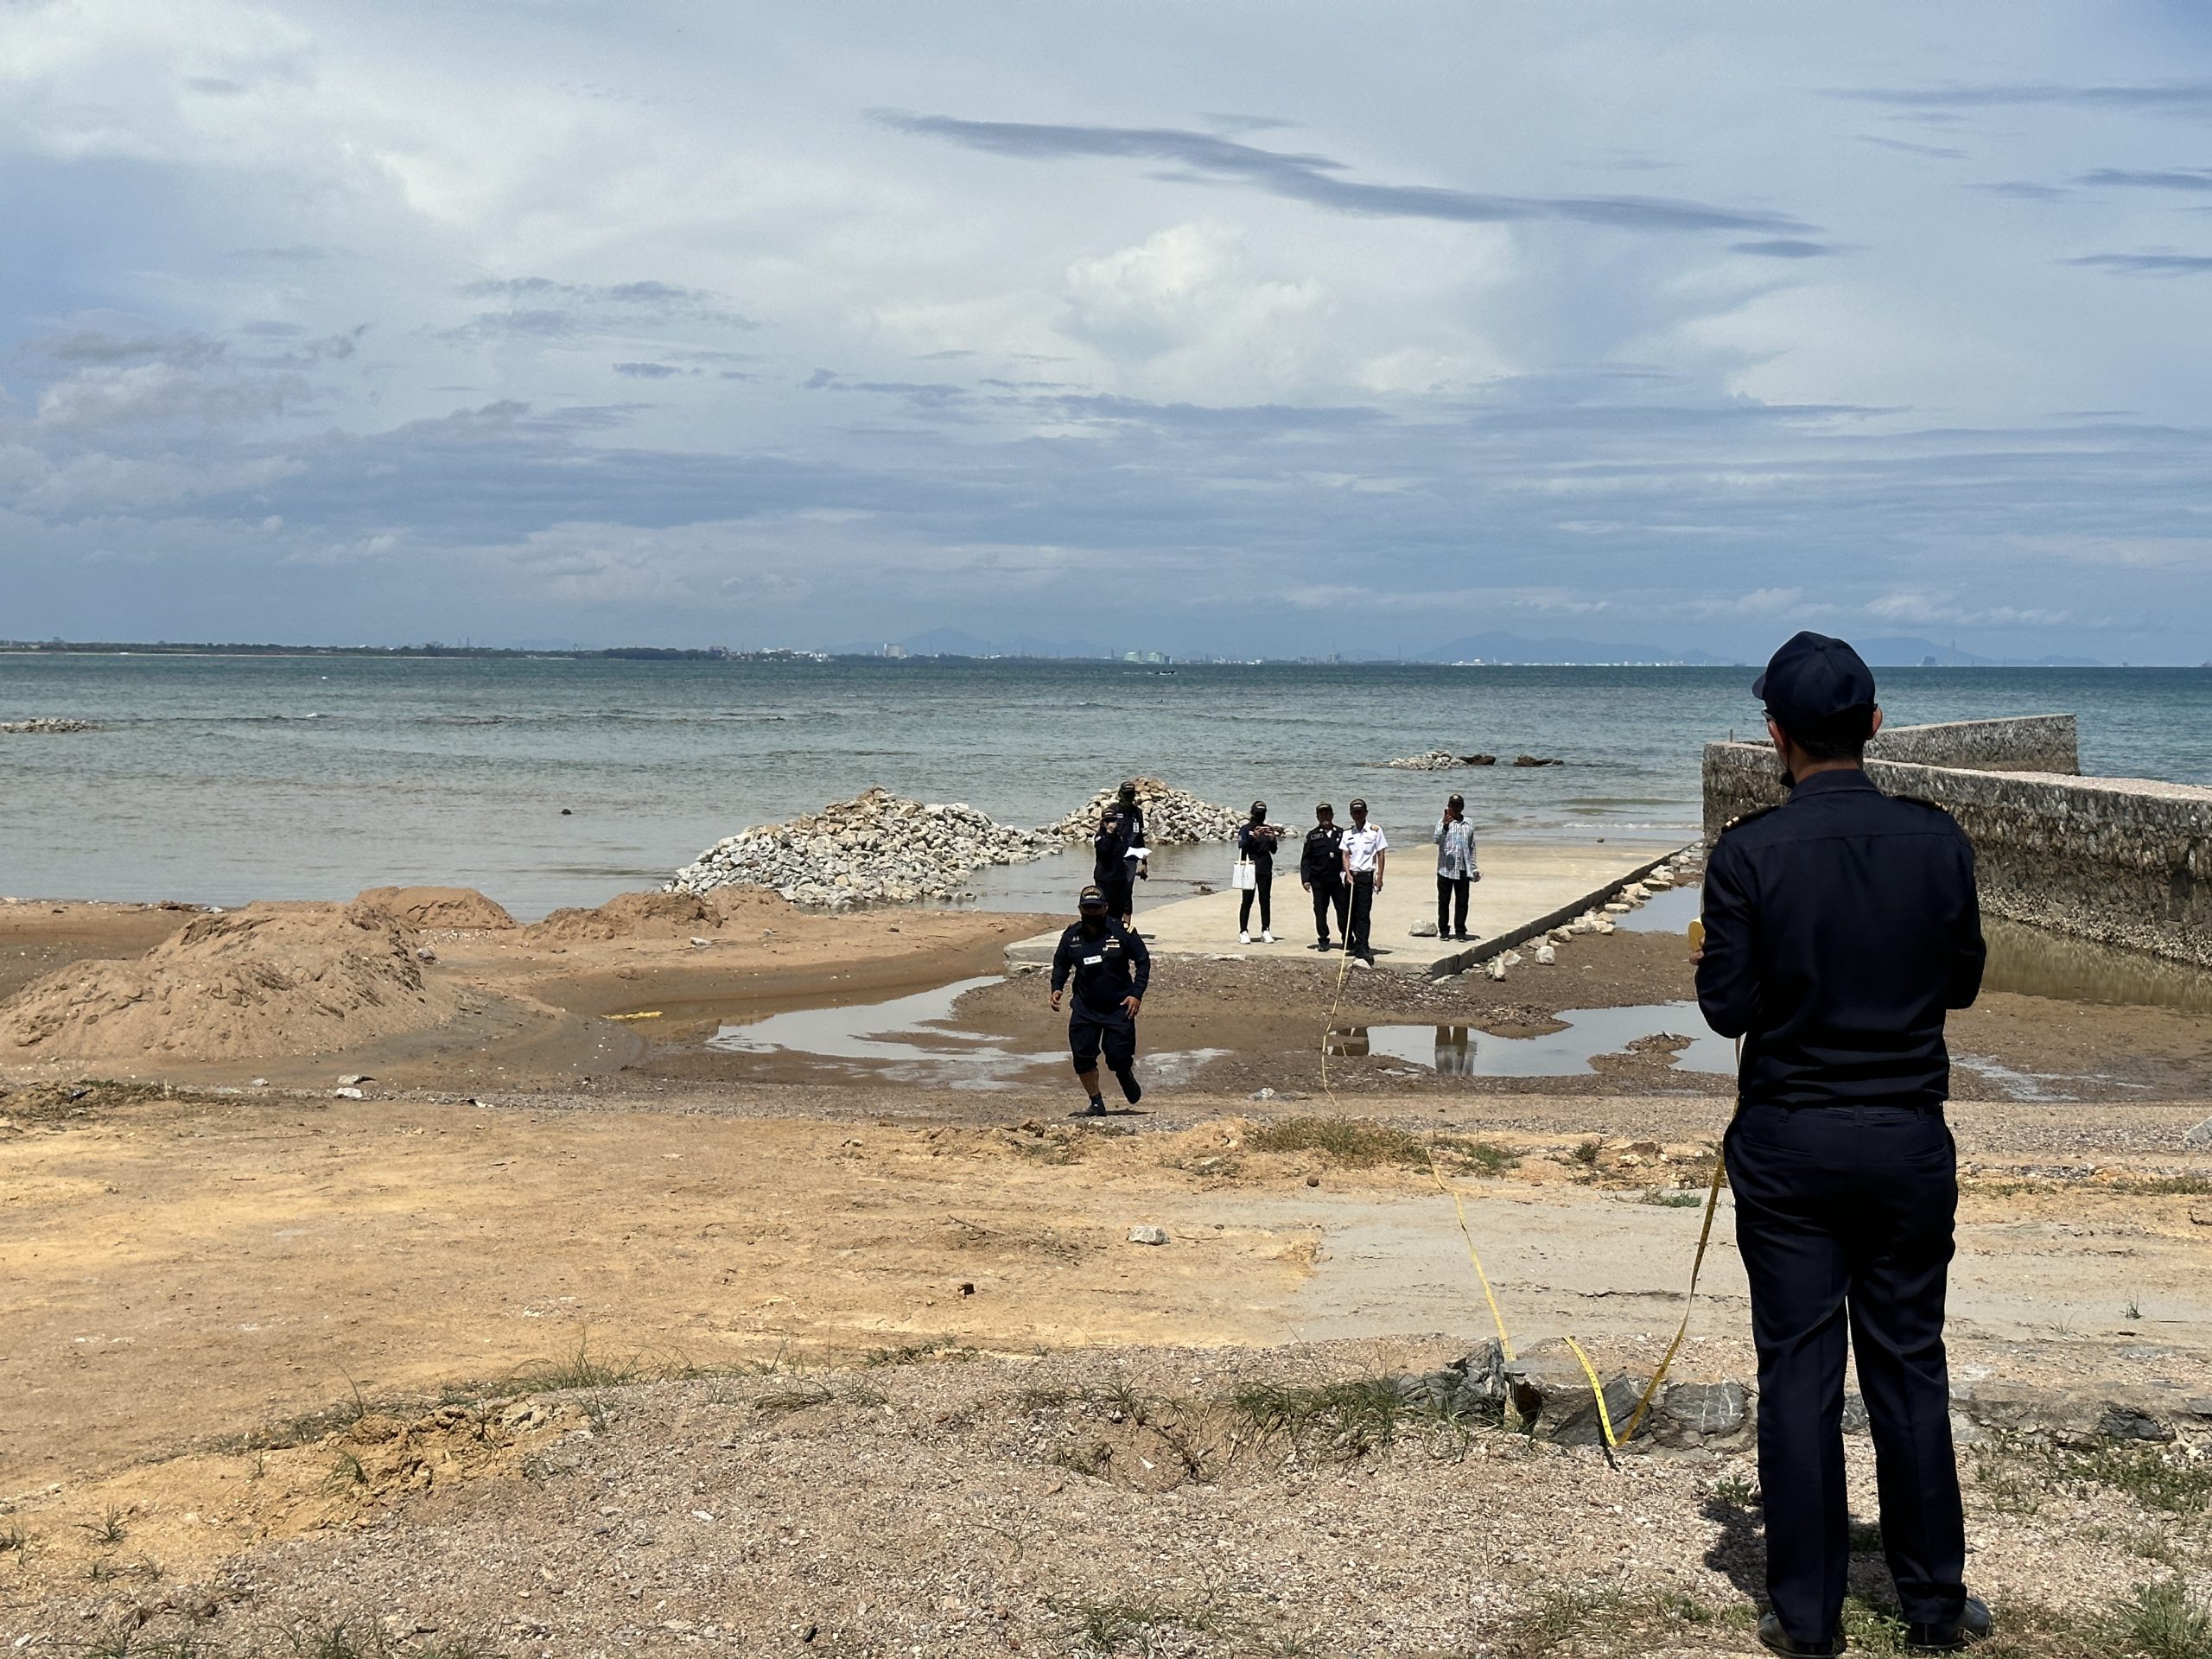 ชลบุรี-หลายหน่วยงาน สนธิกำลังบุกตรวจลักลอบนำรถแบ็คโฮ ขุดดินถมทะเลสัตหีบ